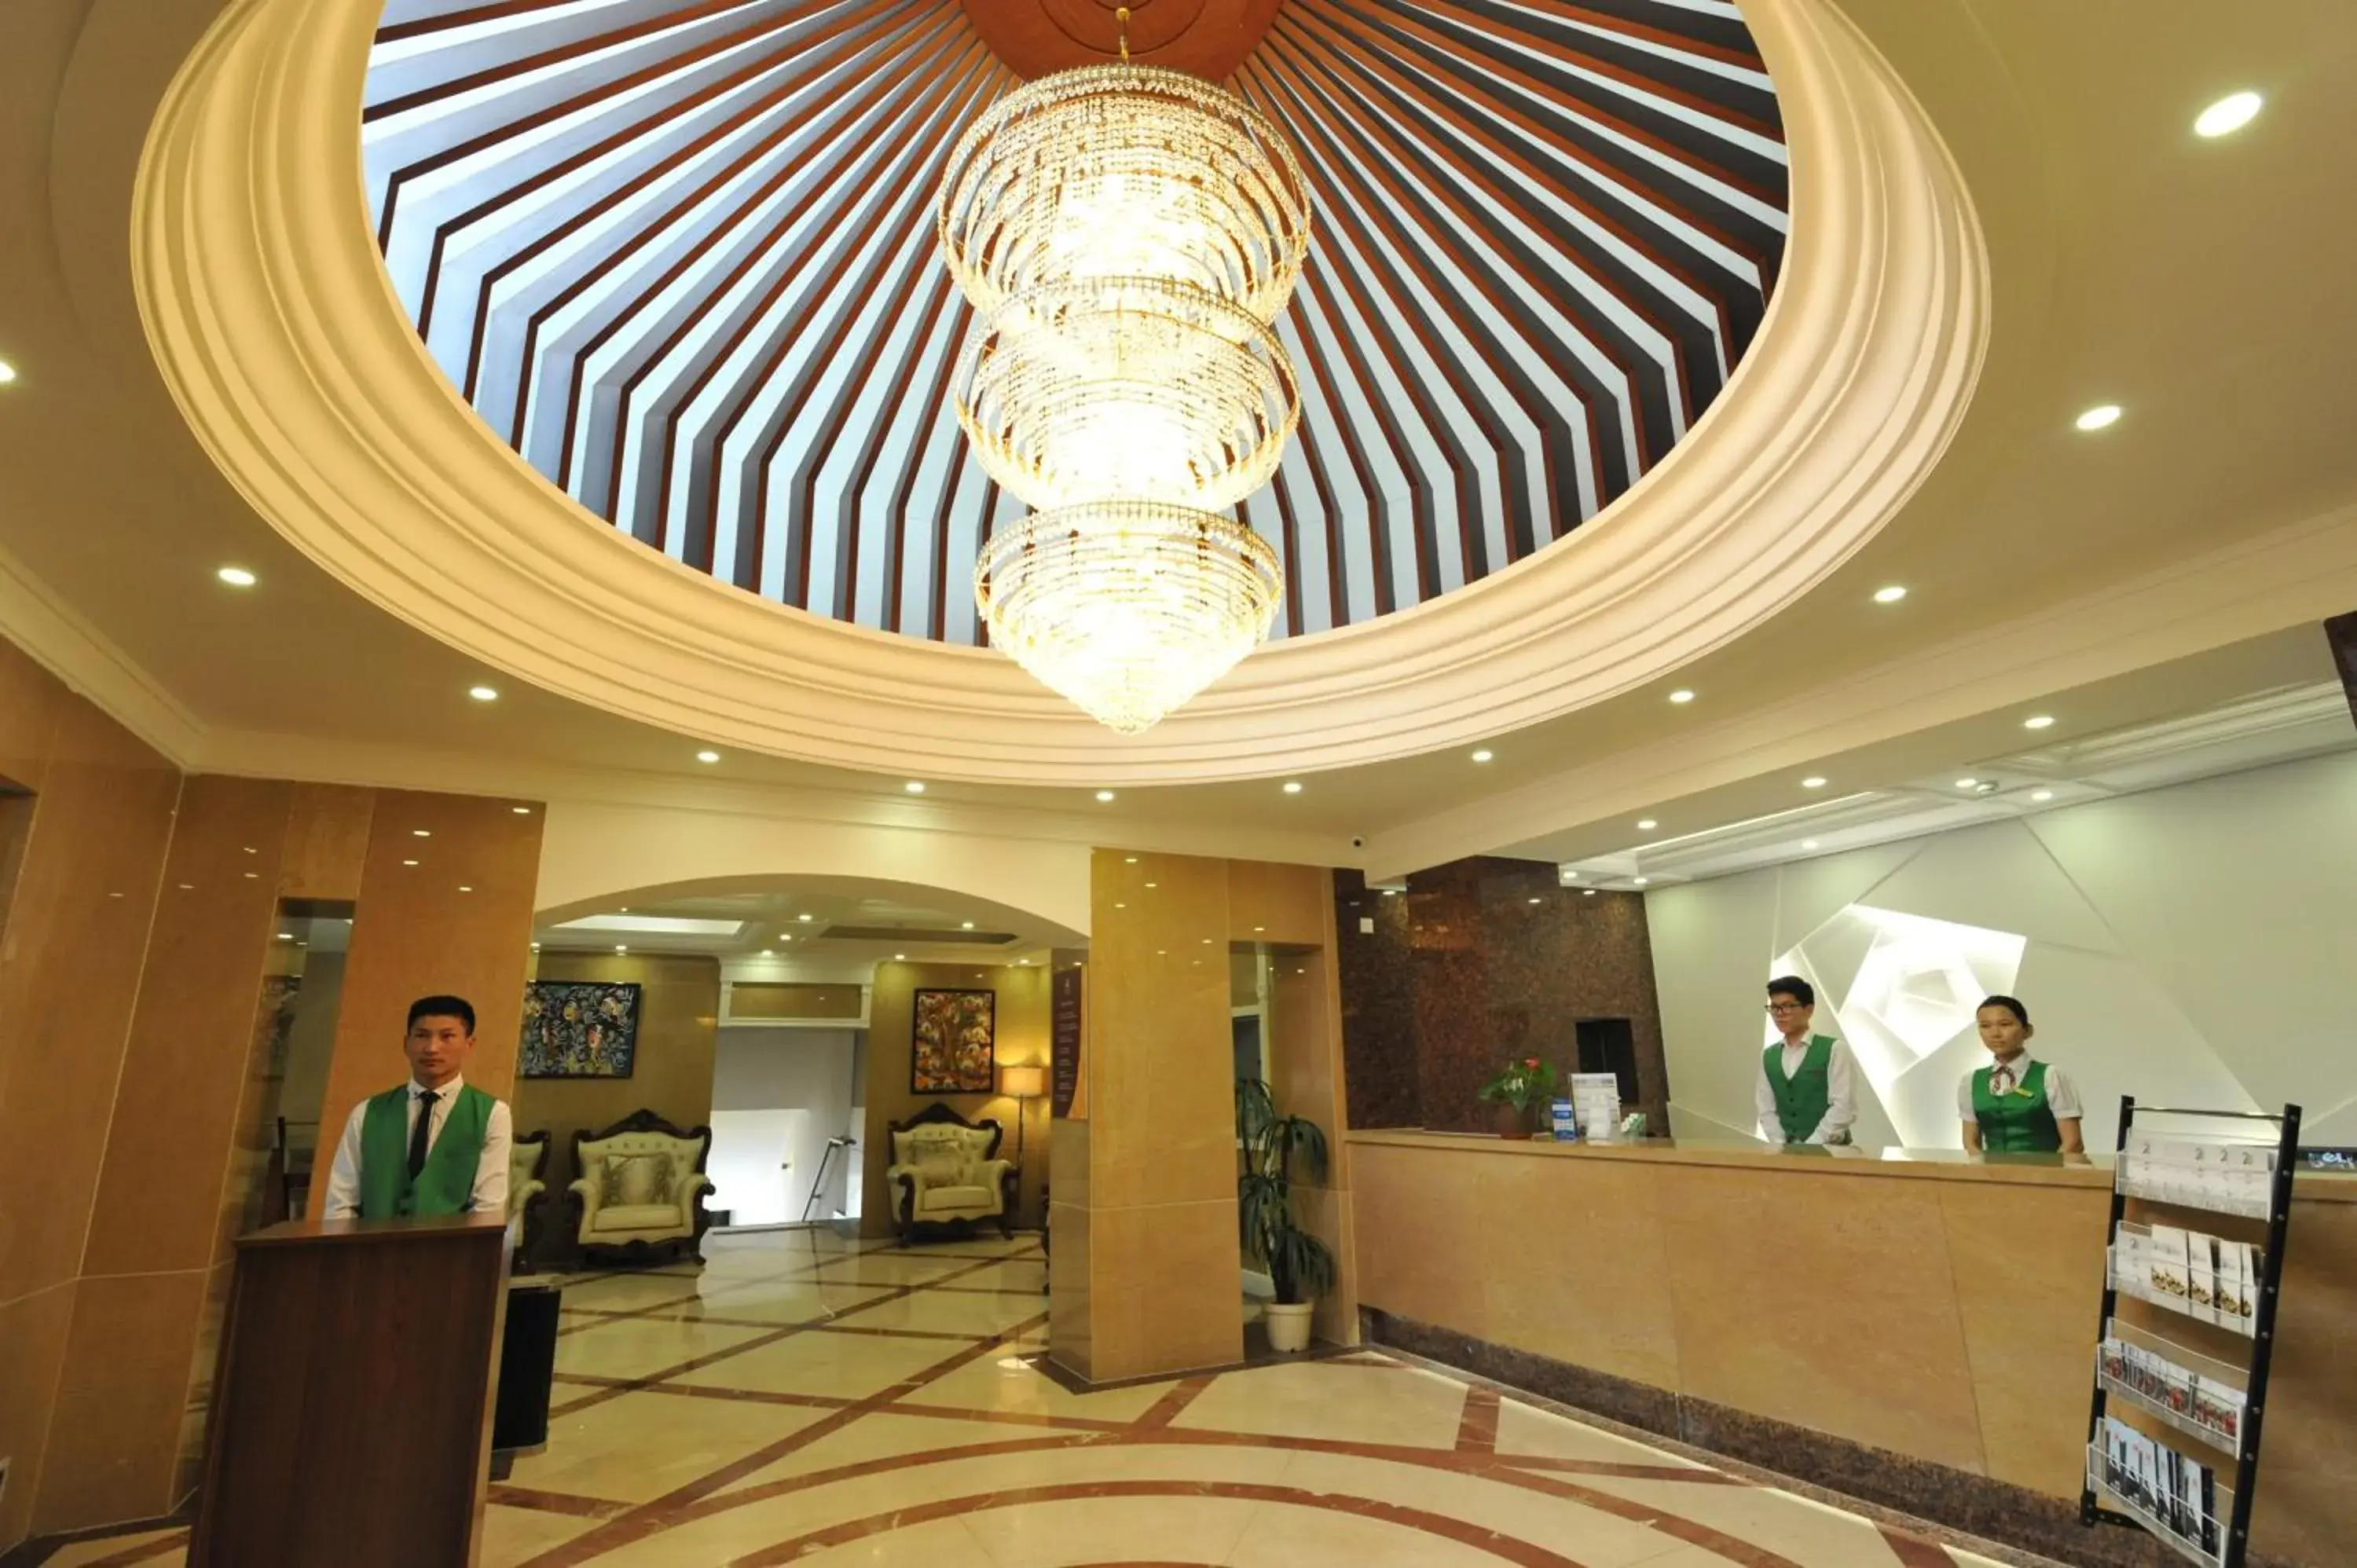 Lobby or reception, Lobby/Reception in Flower Hotel